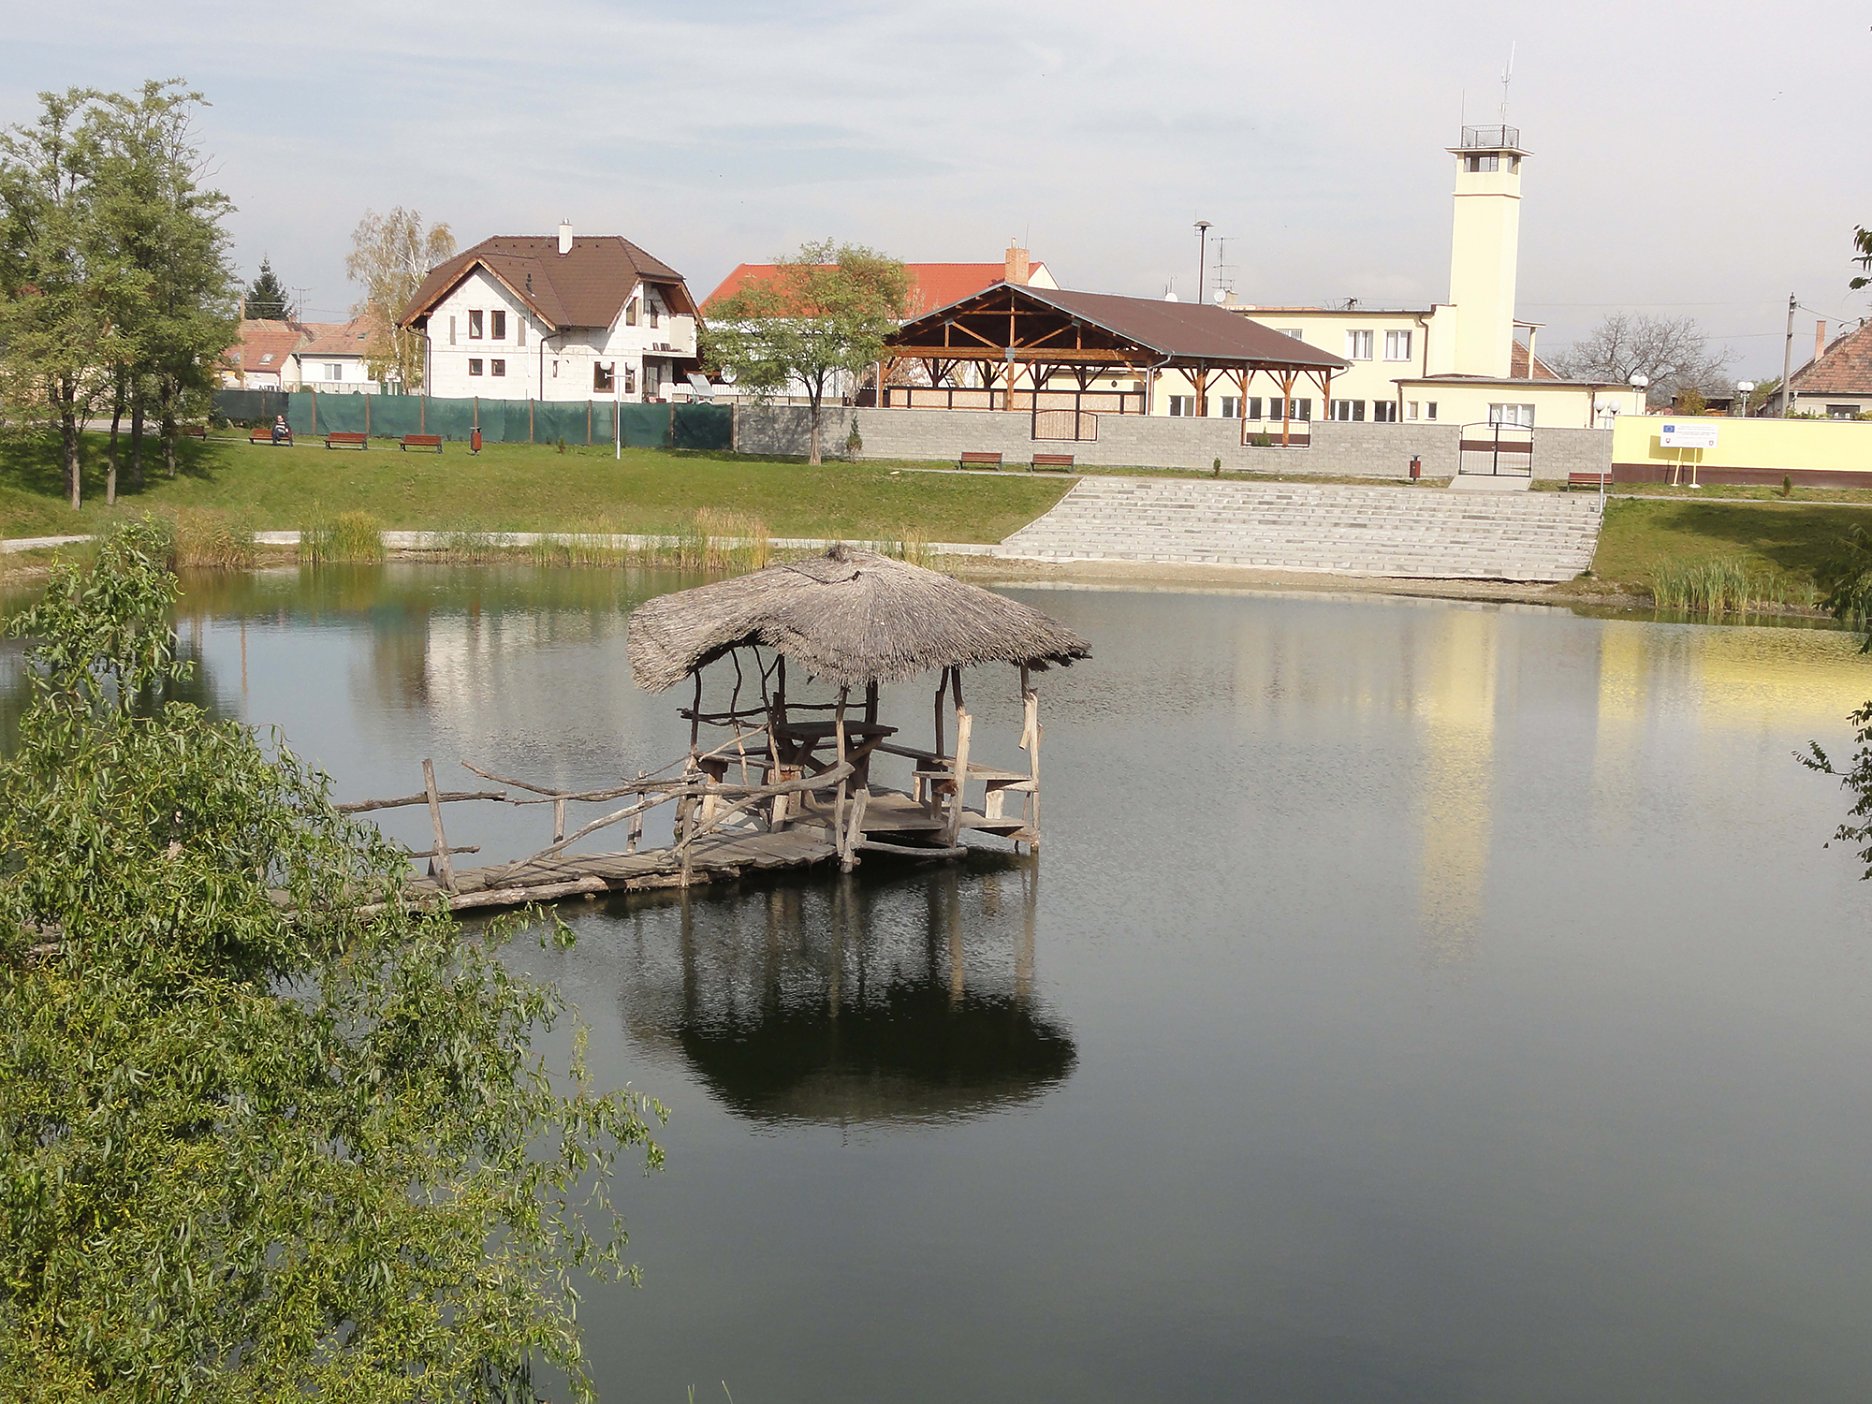 Obec Kostolná pri Dunaji – revitalizácia existujúcej vodnej plochy a vytvorenie nového verejného priestoru, v ktorom sa integruje spoločensko-kultúrna a rekreačno-oddychová funkcia